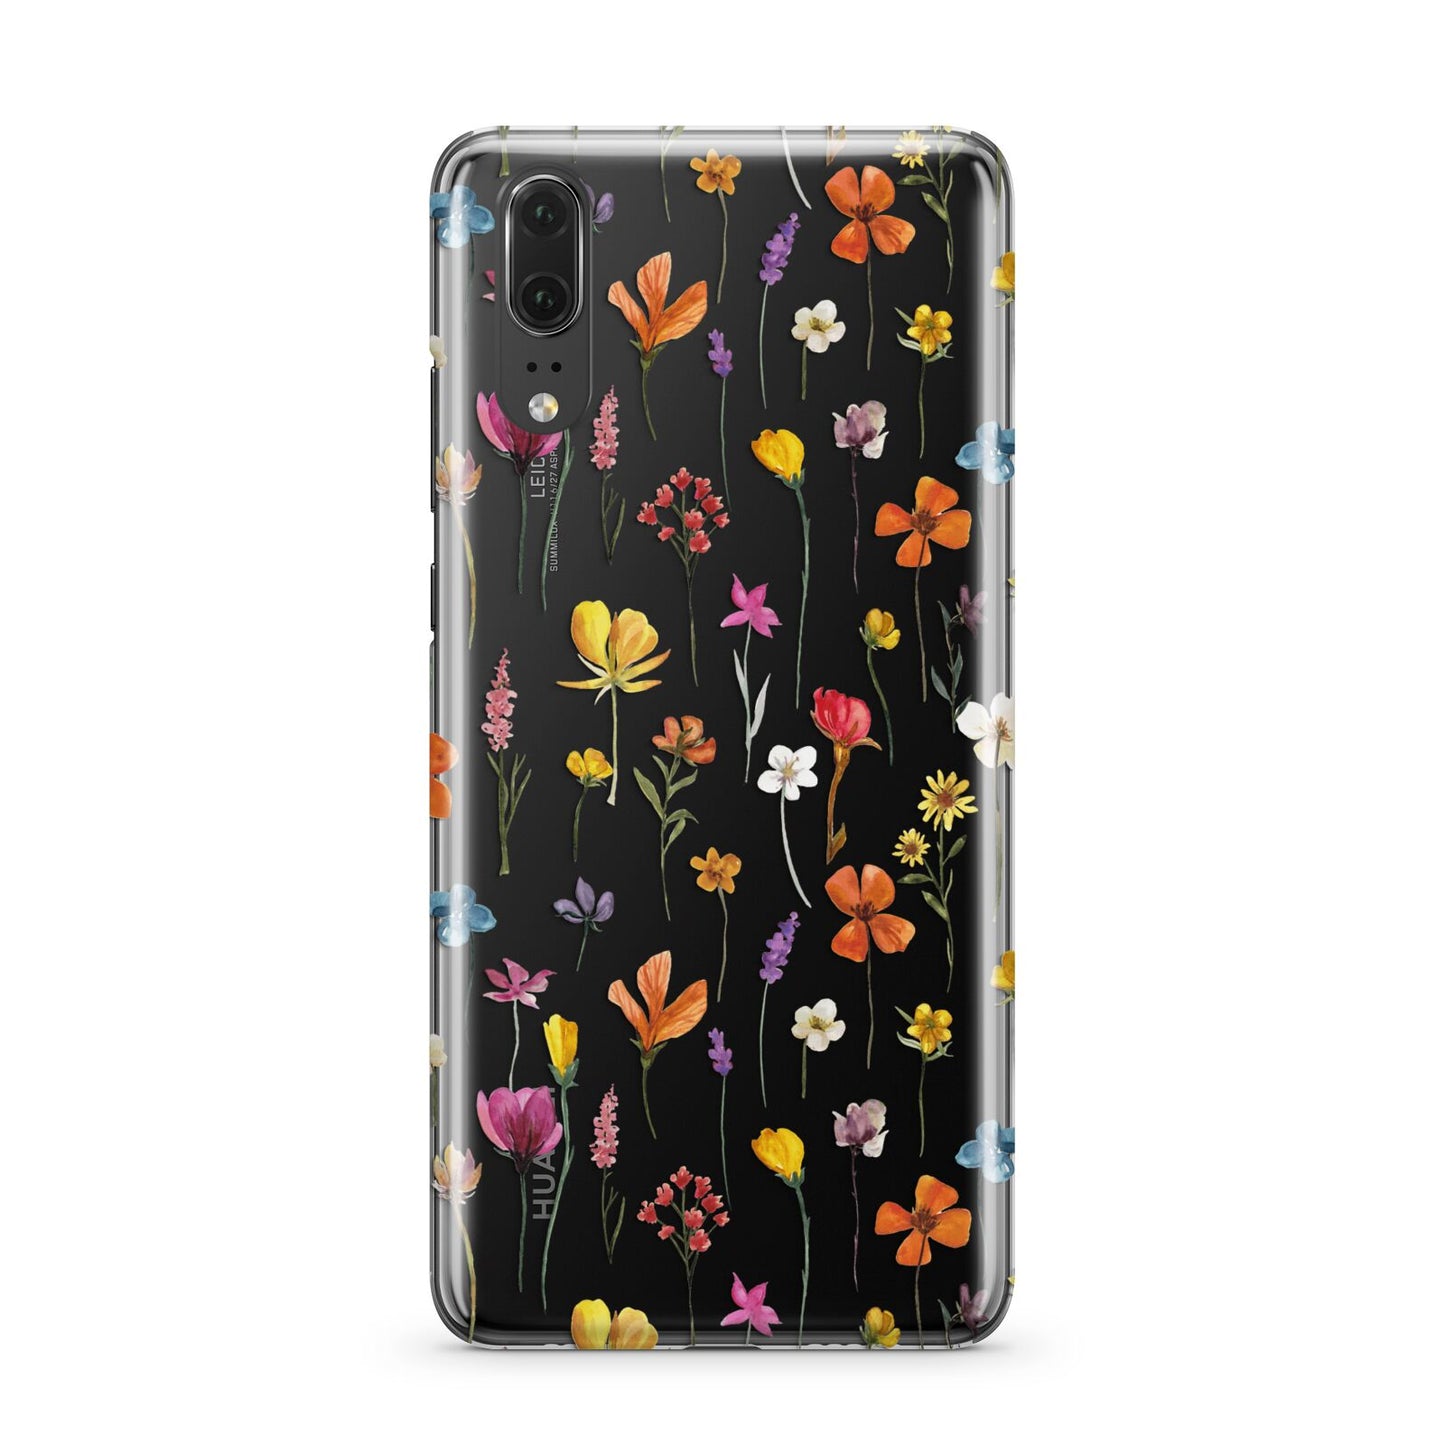 Botanical Floral Huawei P20 Phone Case